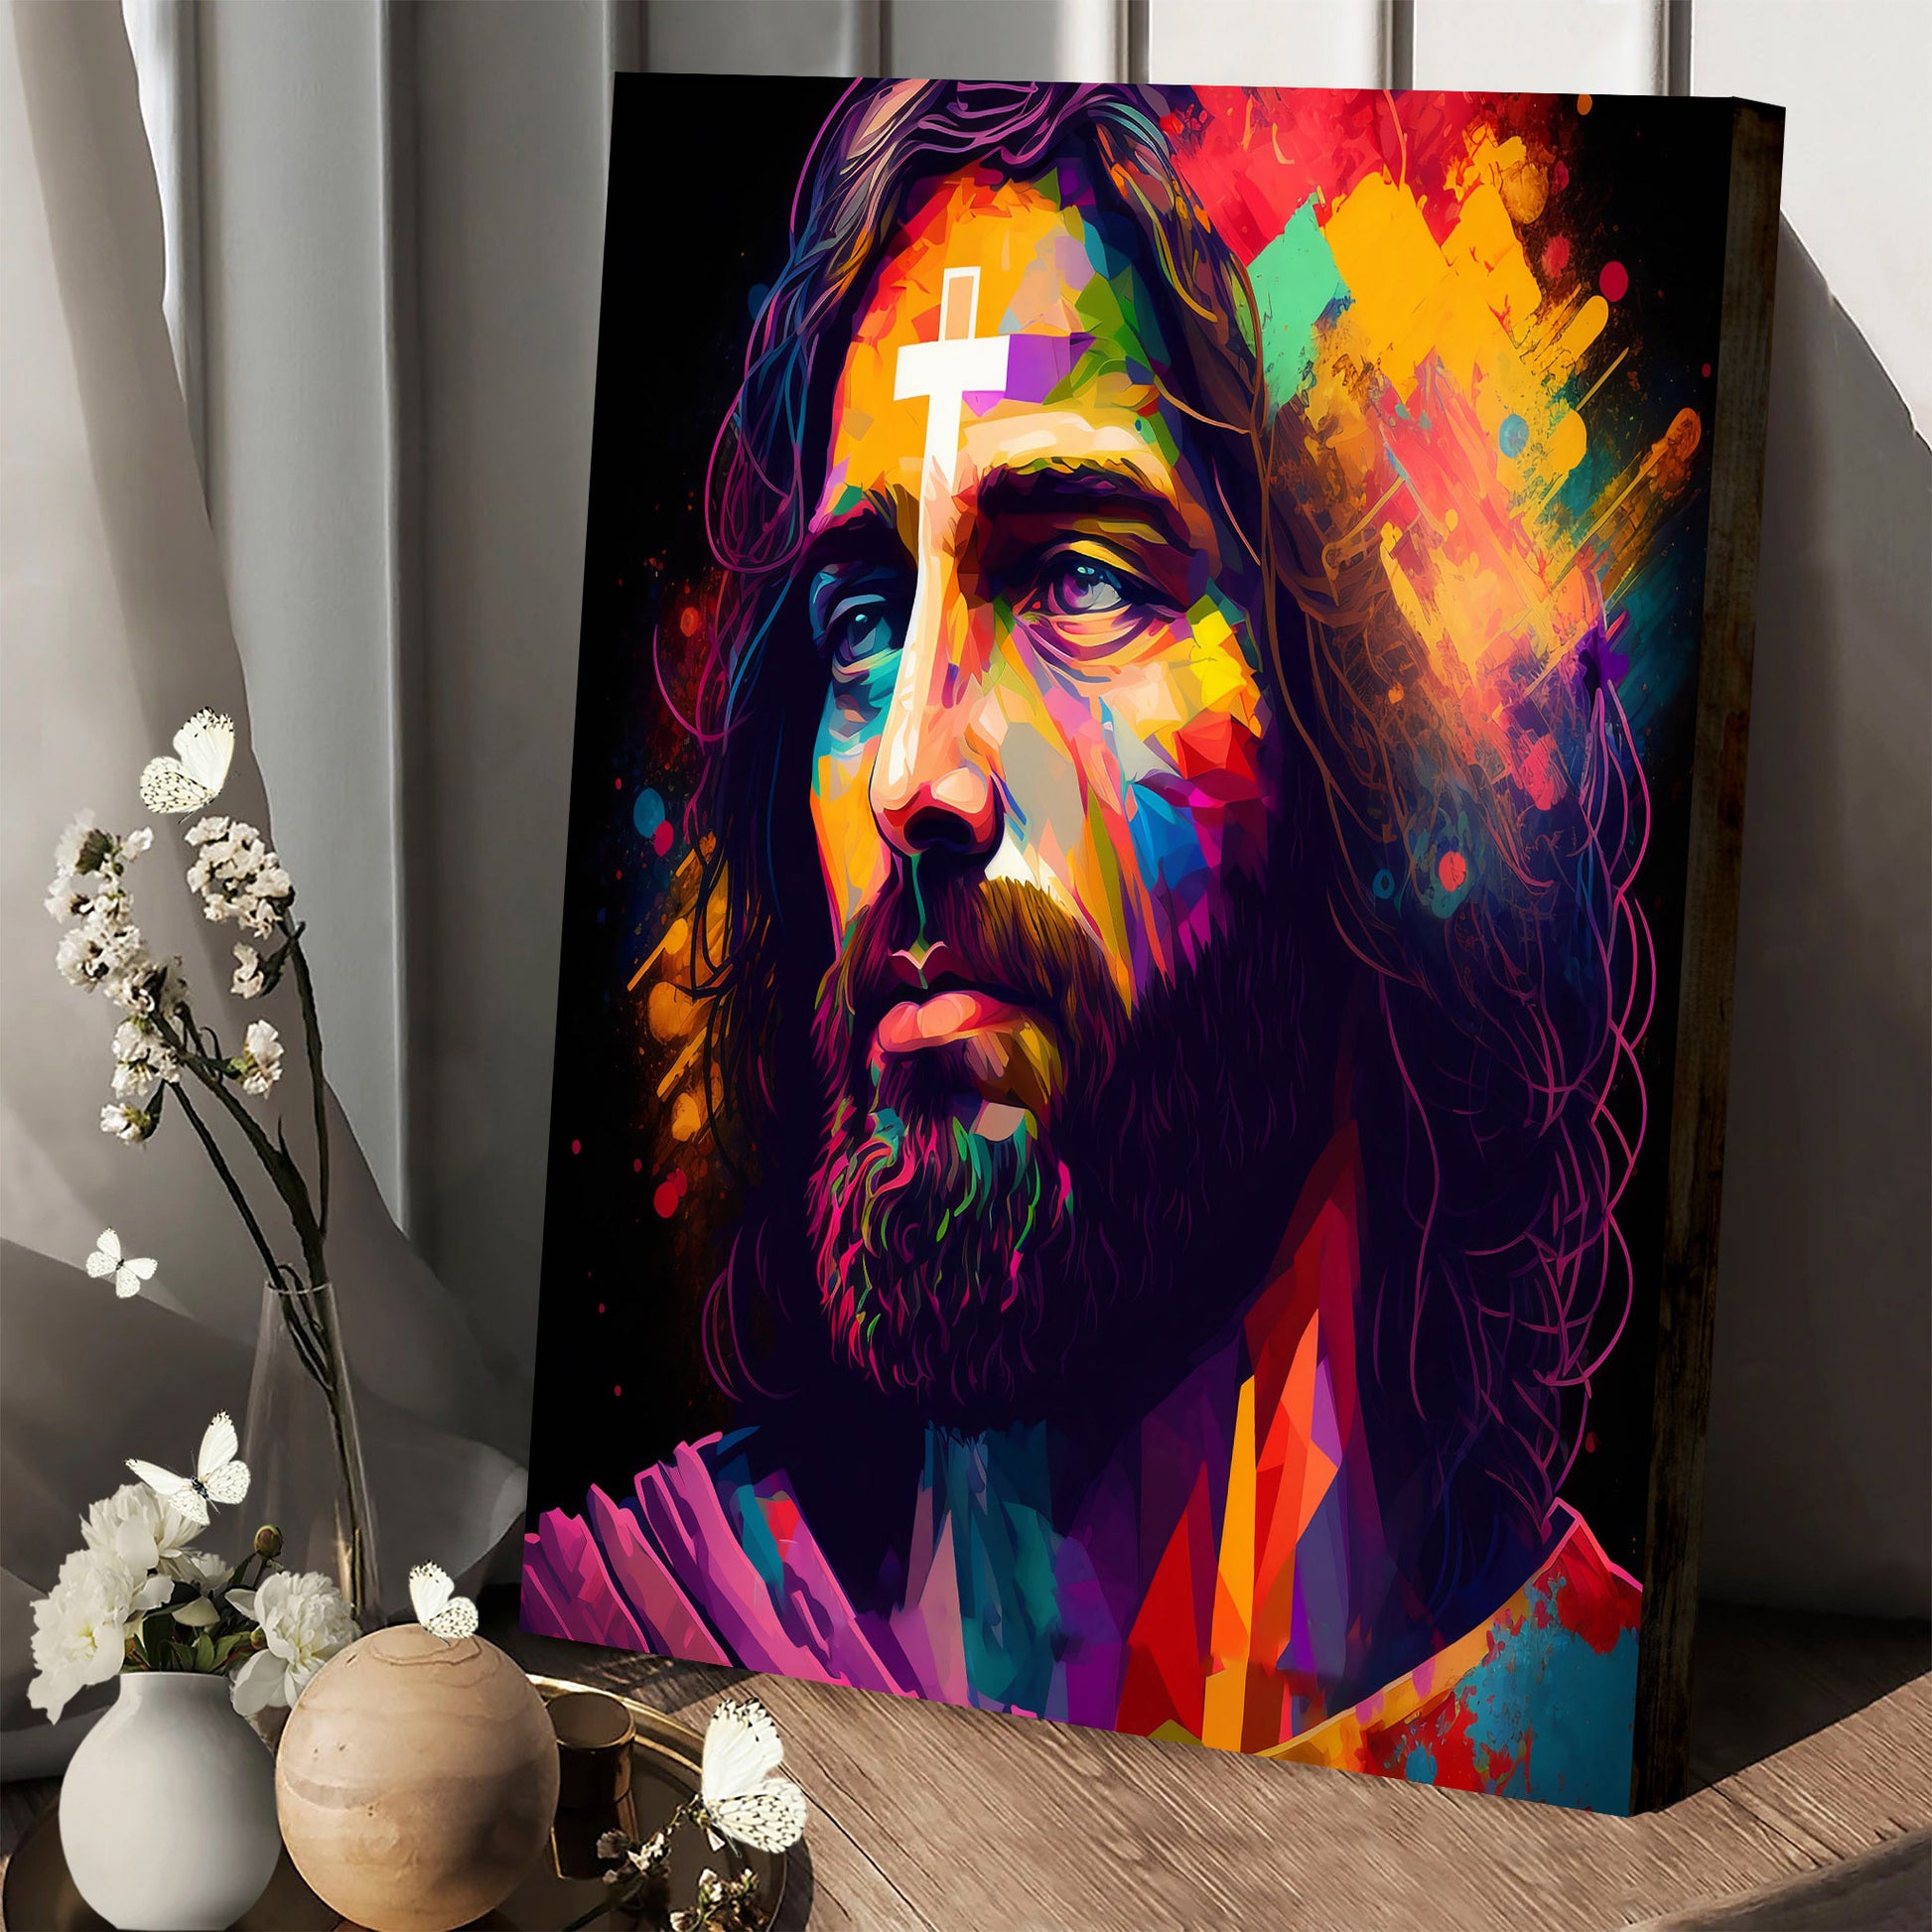 Jesus Christ Portrait - Jesus Canvas Art - Christian Wall Canvas